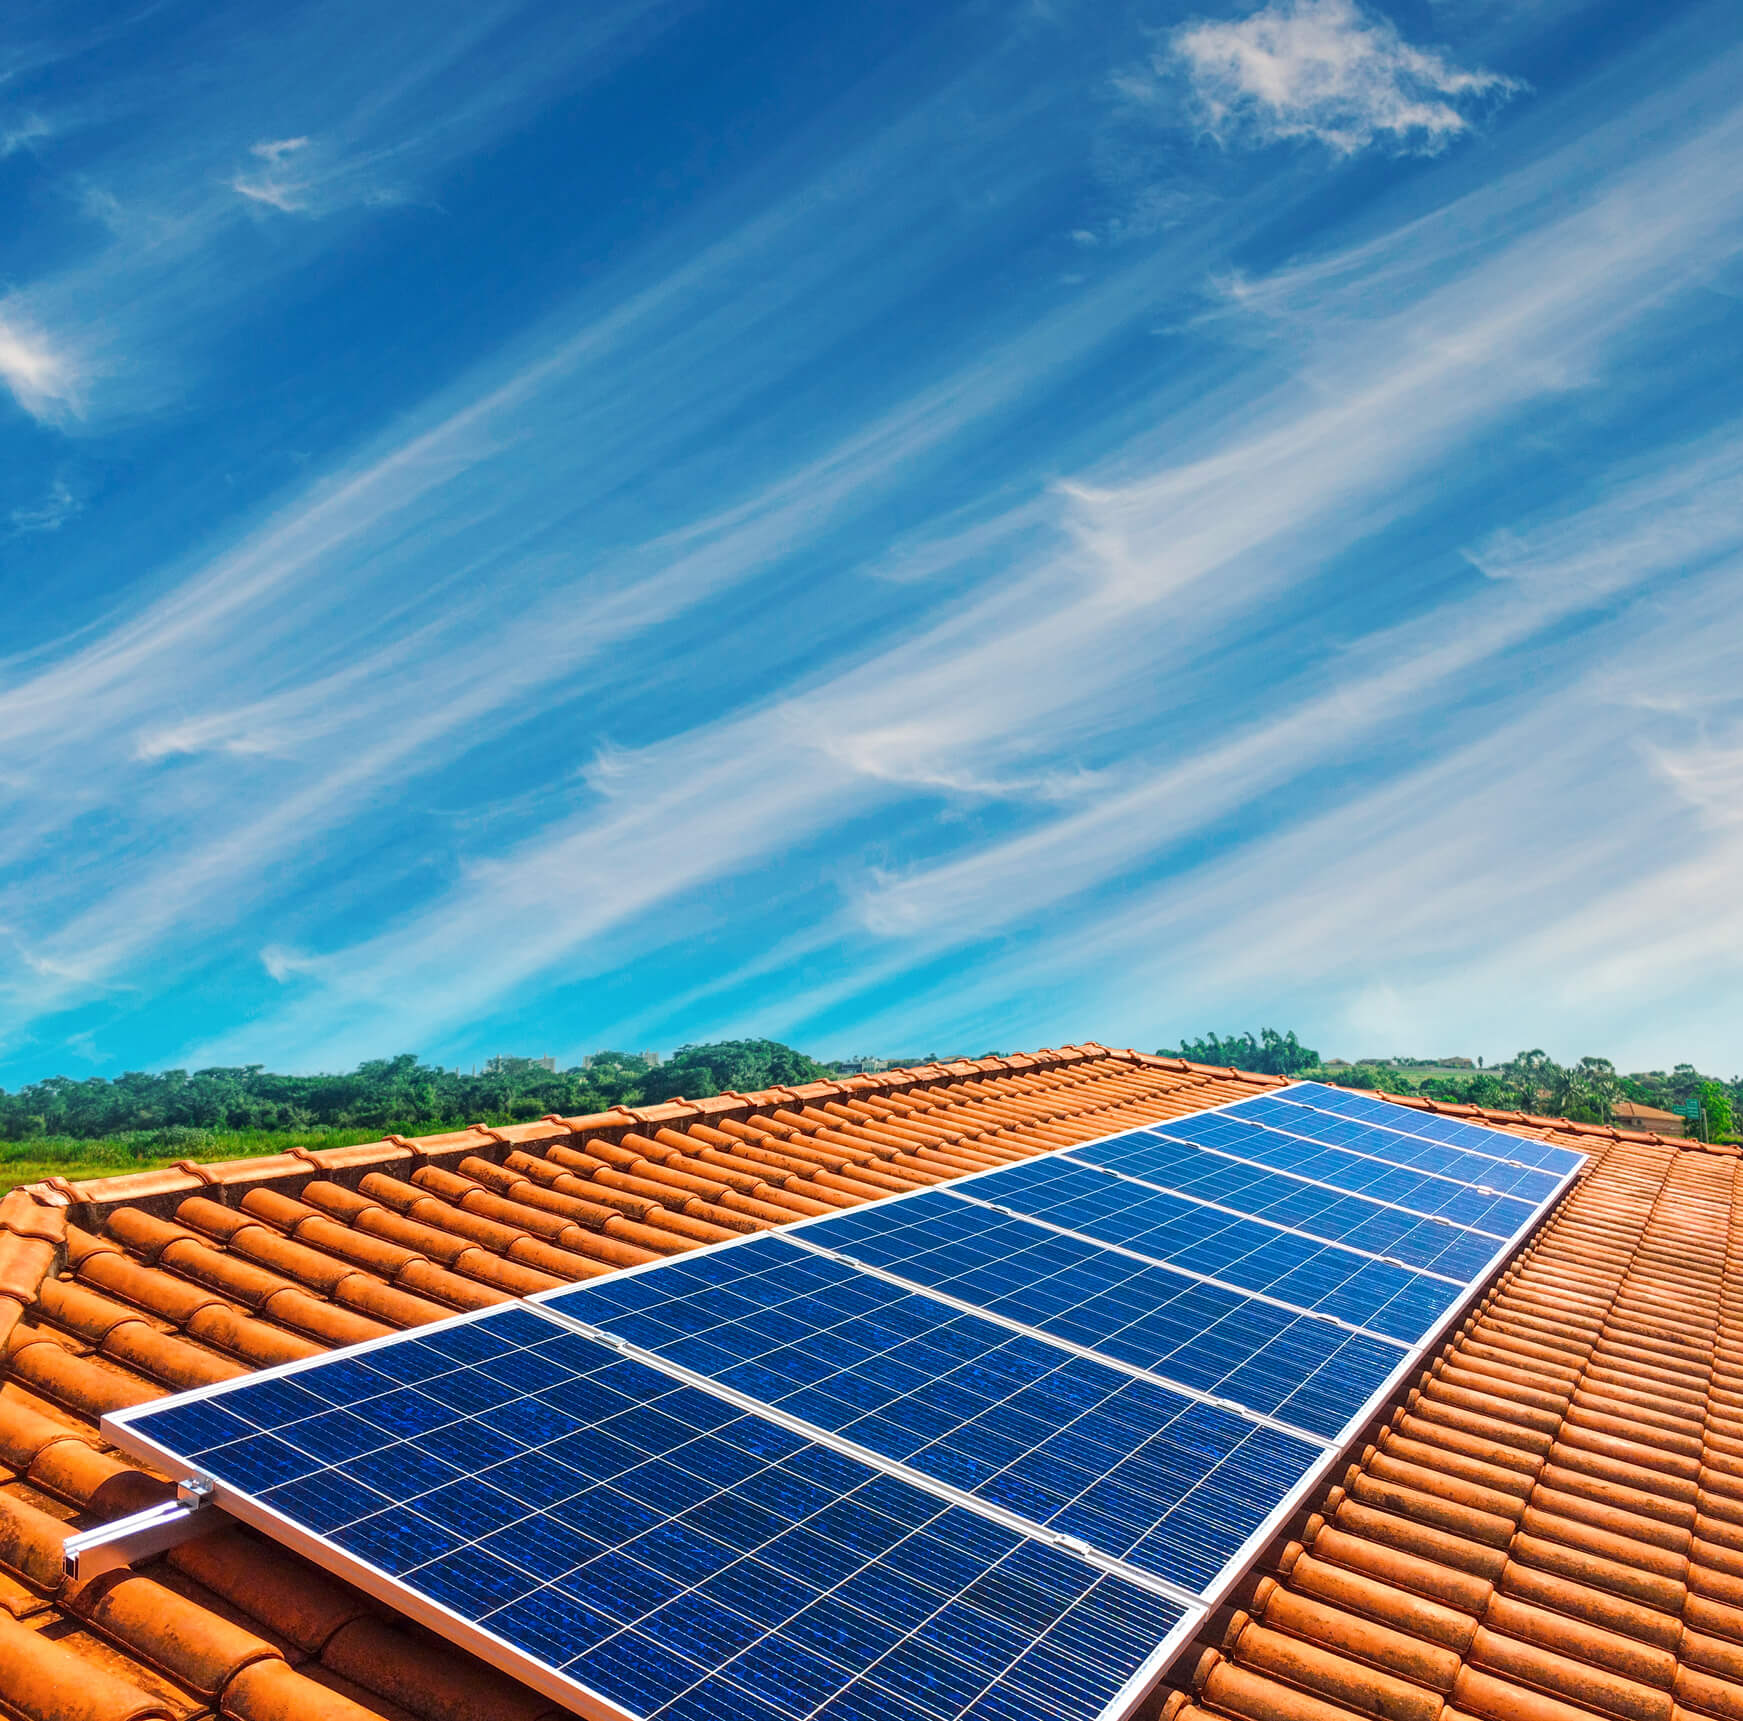 Do Solar Panels Increase Home Value? - Modernize